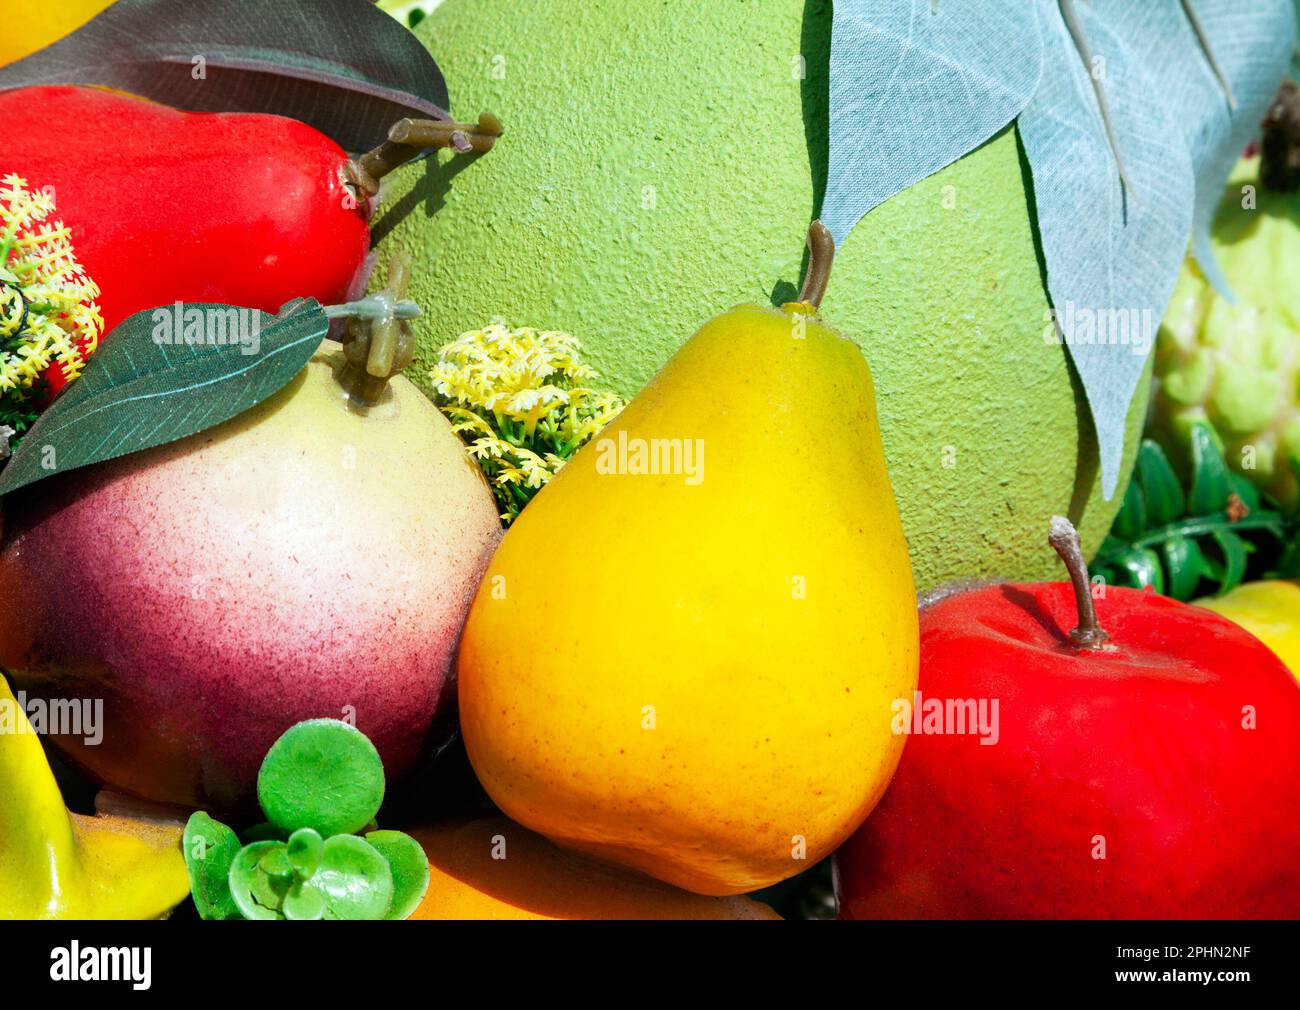 Gruppo di vari falsi frutti tra cui pere, una mela, un pomelo e una mela stella utilizzati come decorazione in un mercato. Mucchio di cibo di plastica appiccicoso in una supe Foto Stock